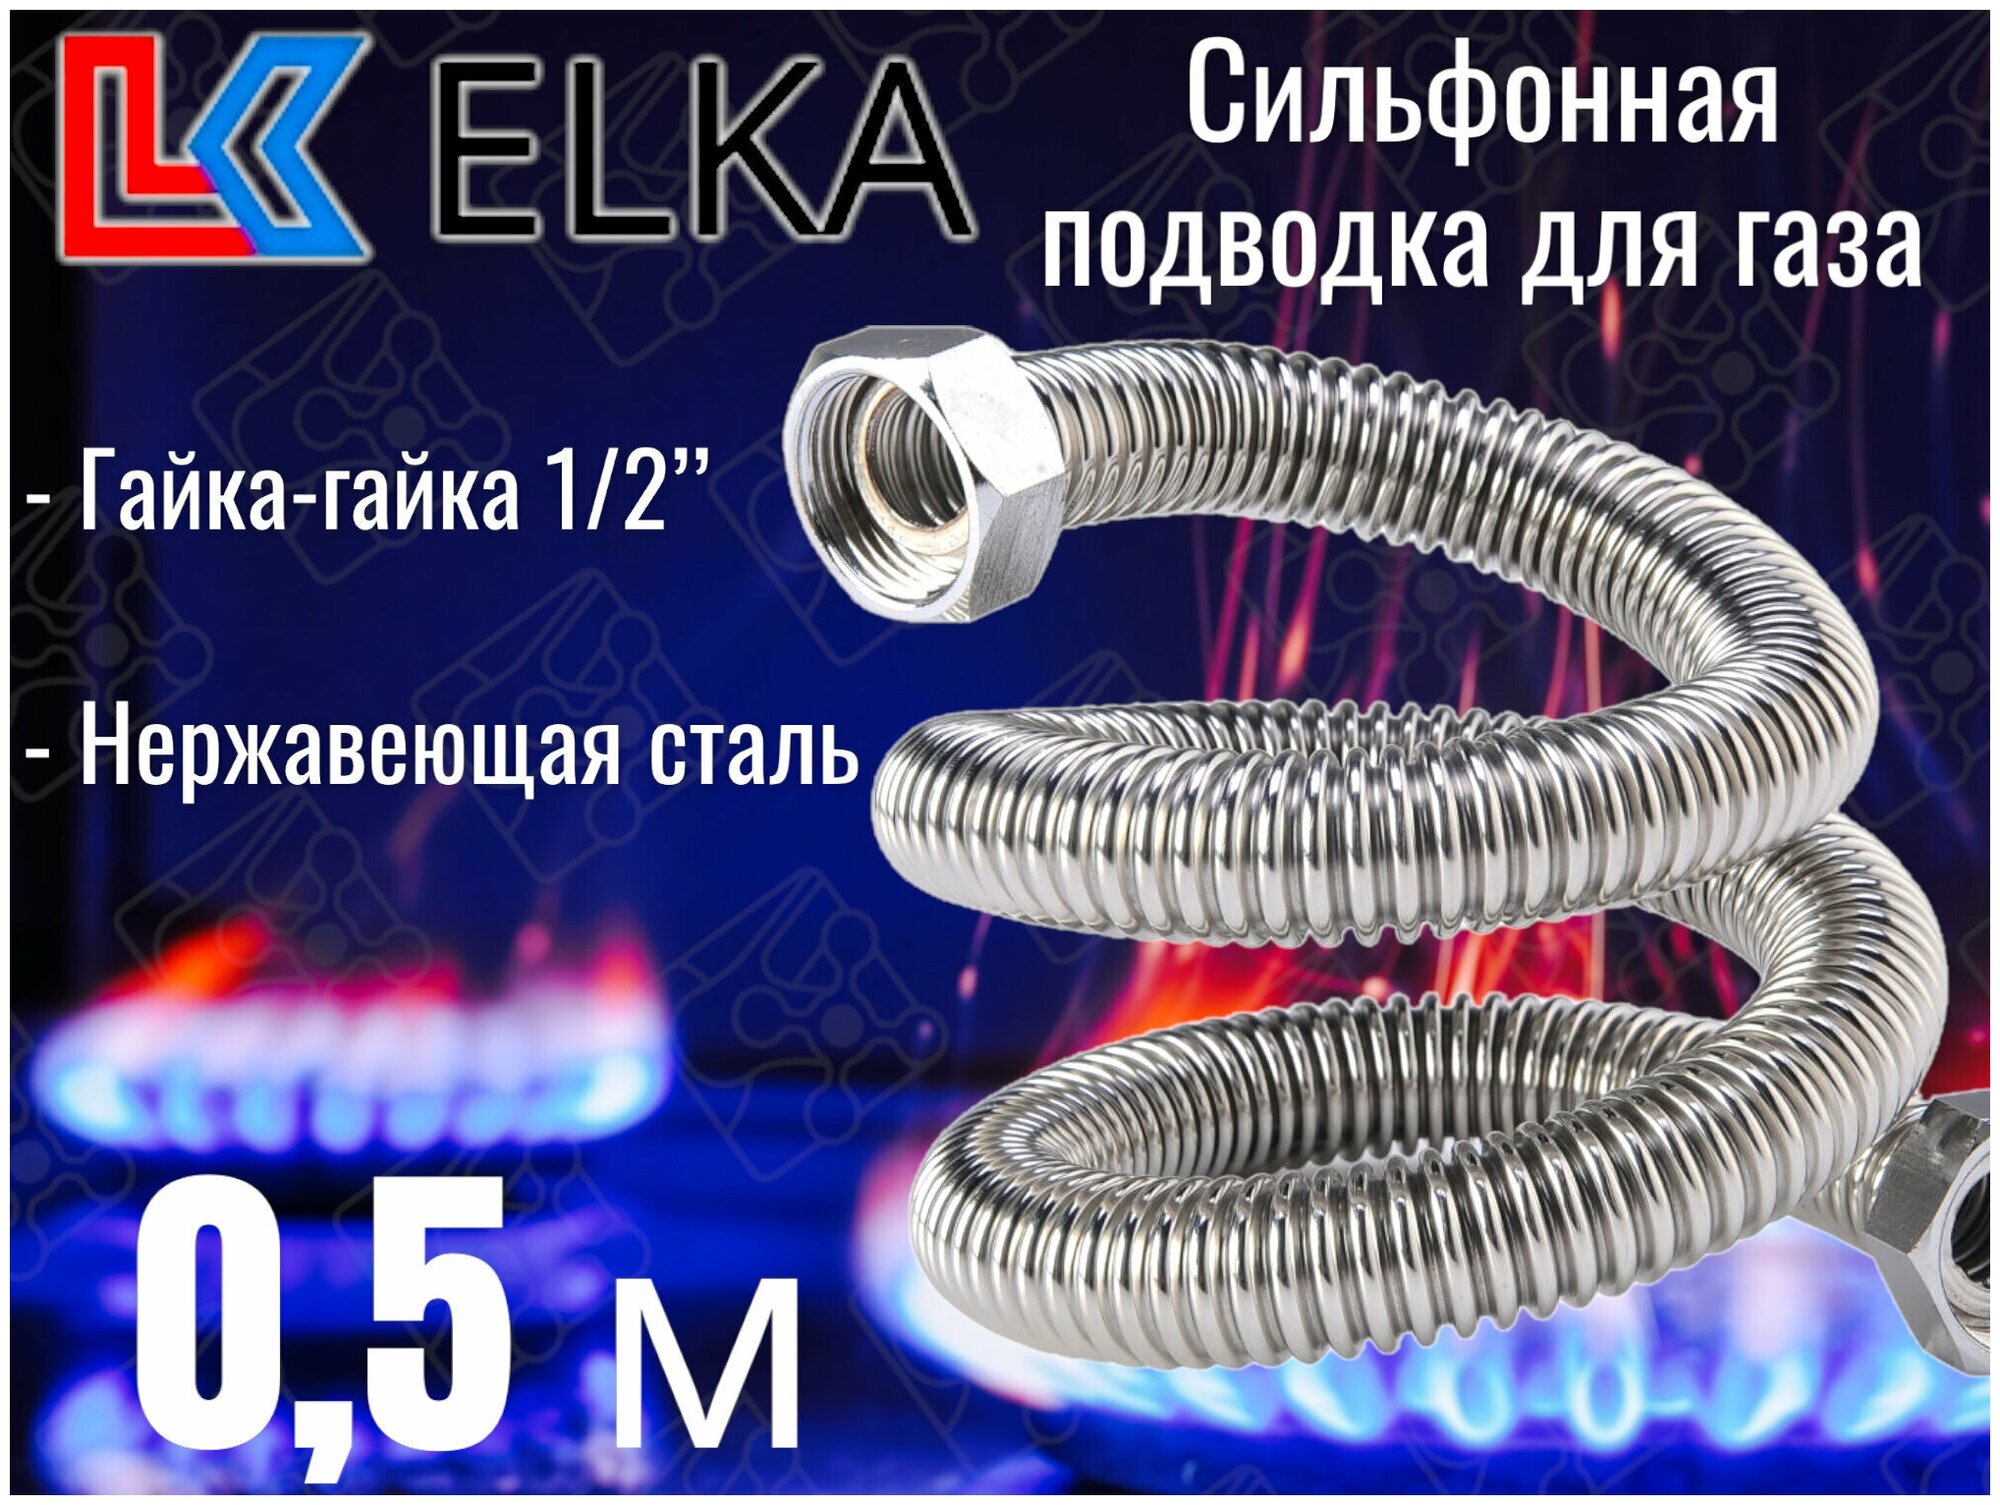 Сильфонная подводка для газа 0,5 м ELKA 1/2" г/г (в/в) / Шланг газовый / Подводка для газовых систем 50 см